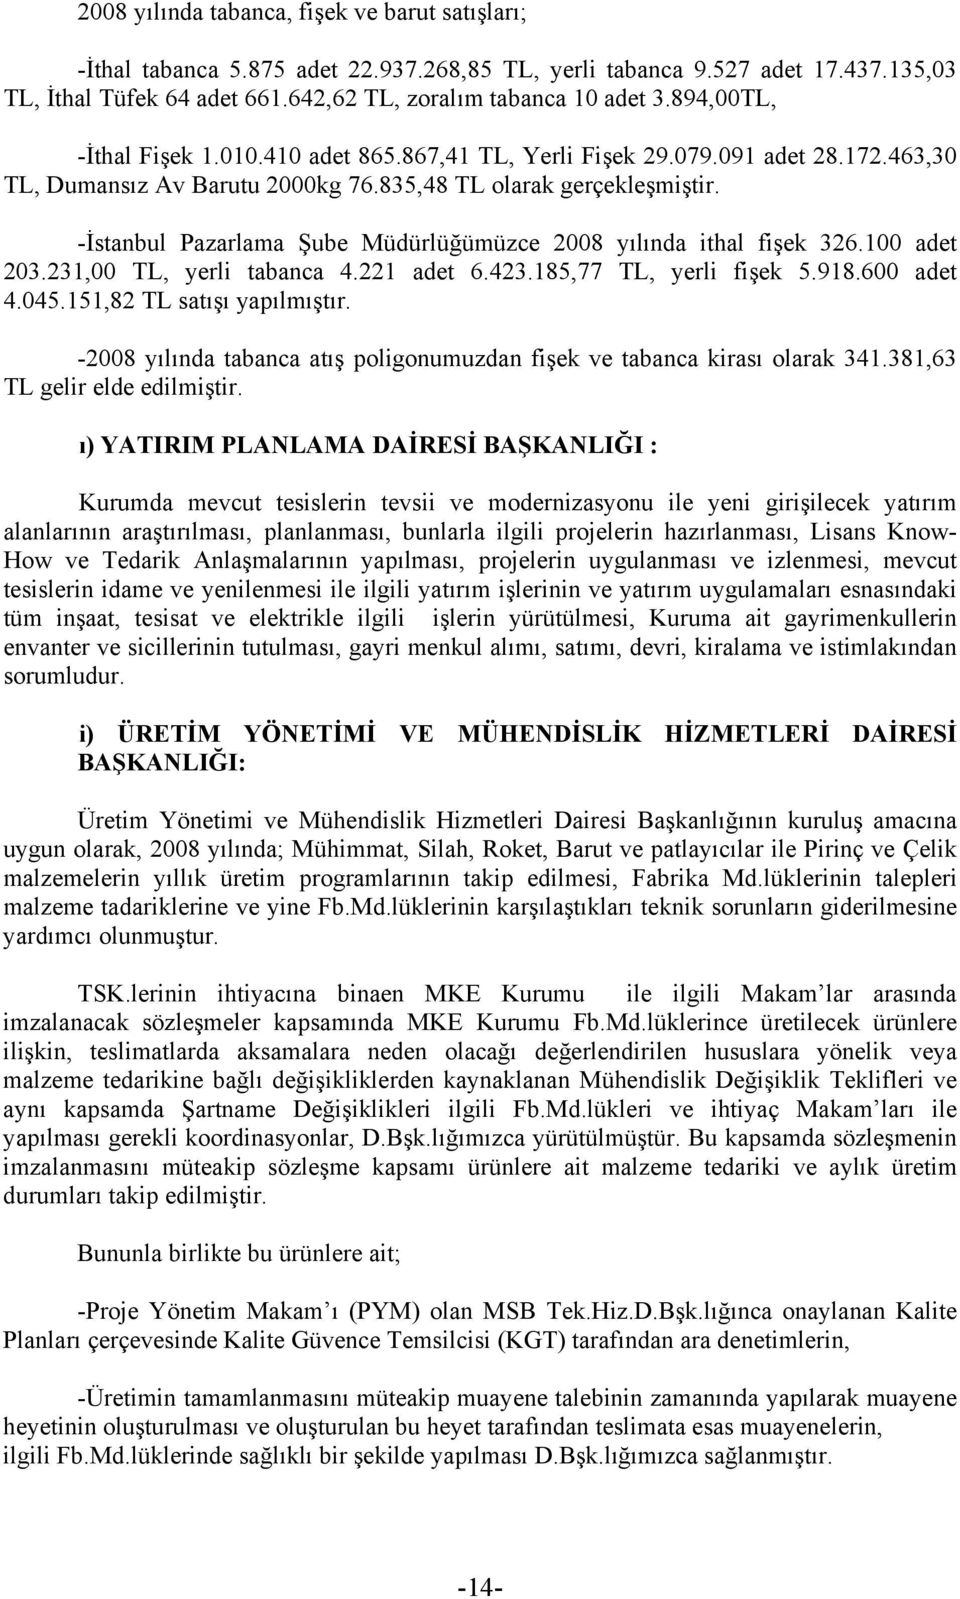 -İstanbul Pazarlama Şube Müdürlüğümüzce 2008 yılında ithal fişek 326.100 adet 203.231,00 TL, yerli tabanca 4.221 adet 6.423.185,77 TL, yerli fişek 5.918.600 adet 4.045.151,82 TL satışı yapılmıştır.